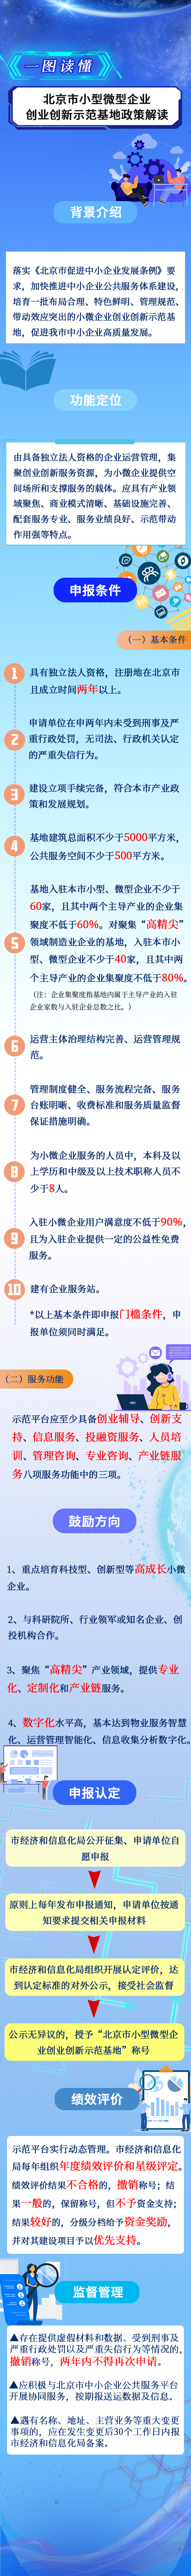 一圖讀懂《北京市小型微型企業創業創新示範基地管理辦法》.jpg